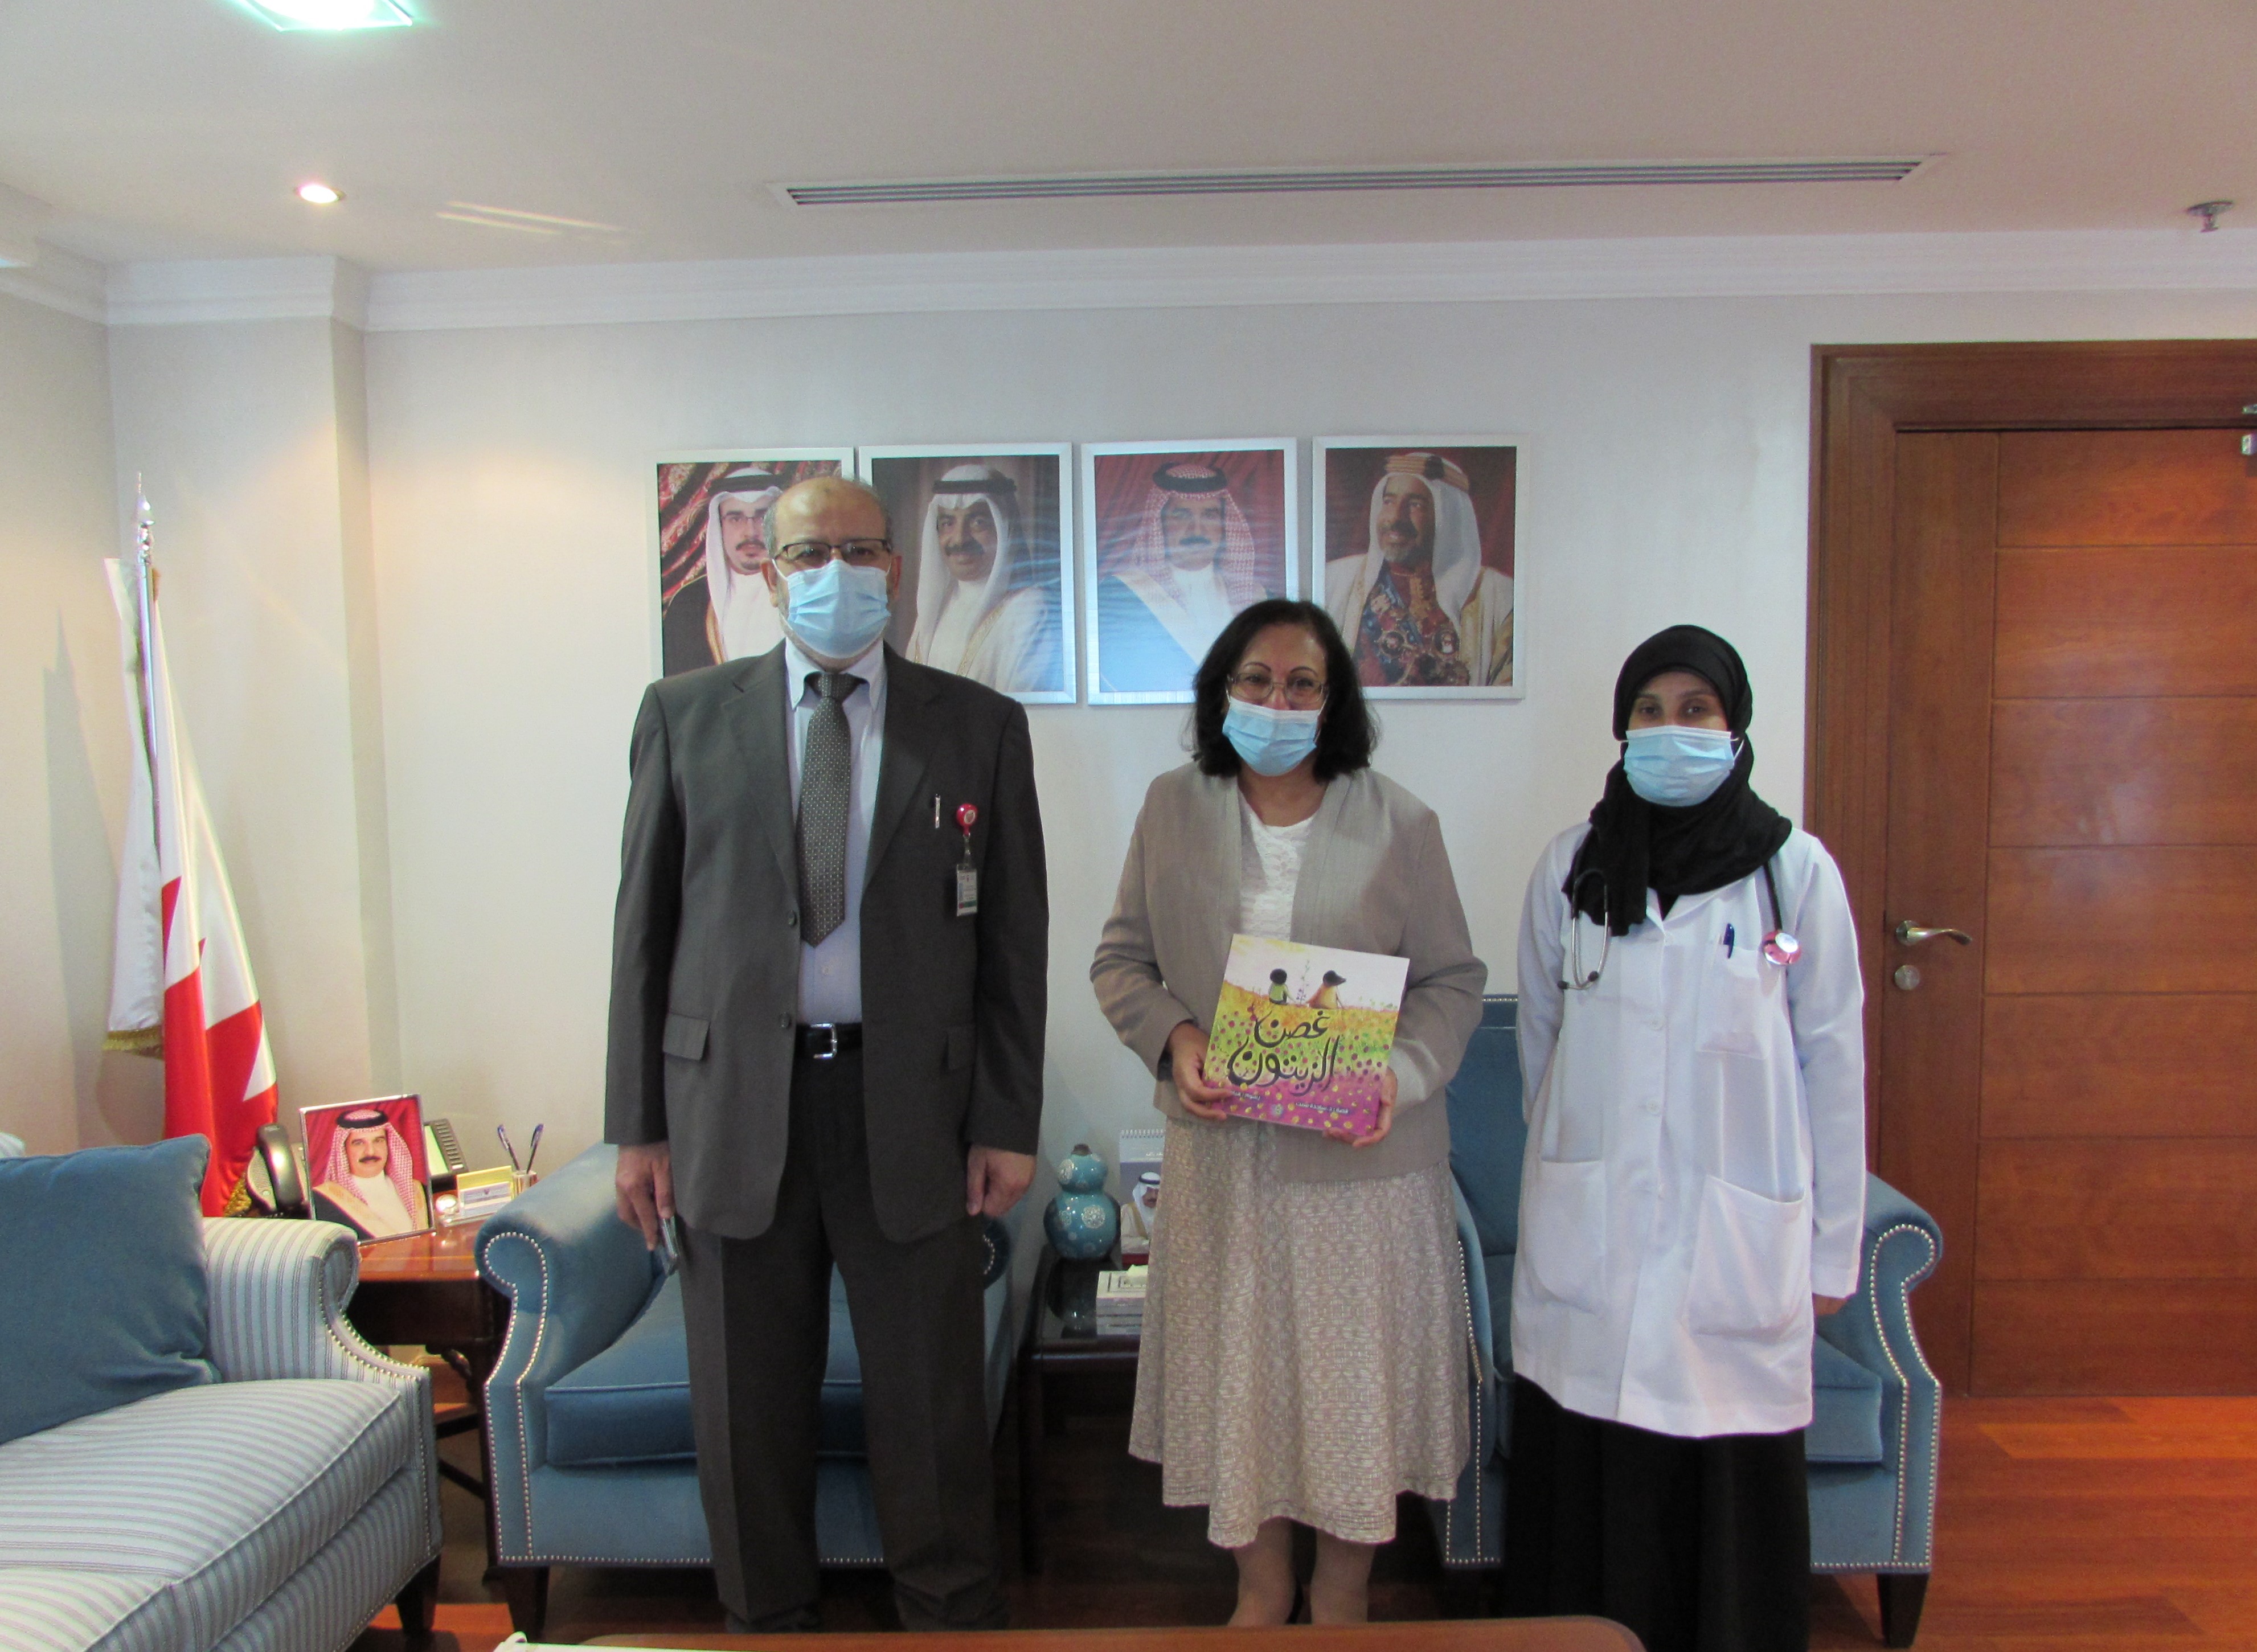 سعادة وزيرة الصحة تستقبل الدكتورة ساجدة سبت وتشيد بإصدارها " غصن الزيتون" لصالح دعم مريضات السرطان